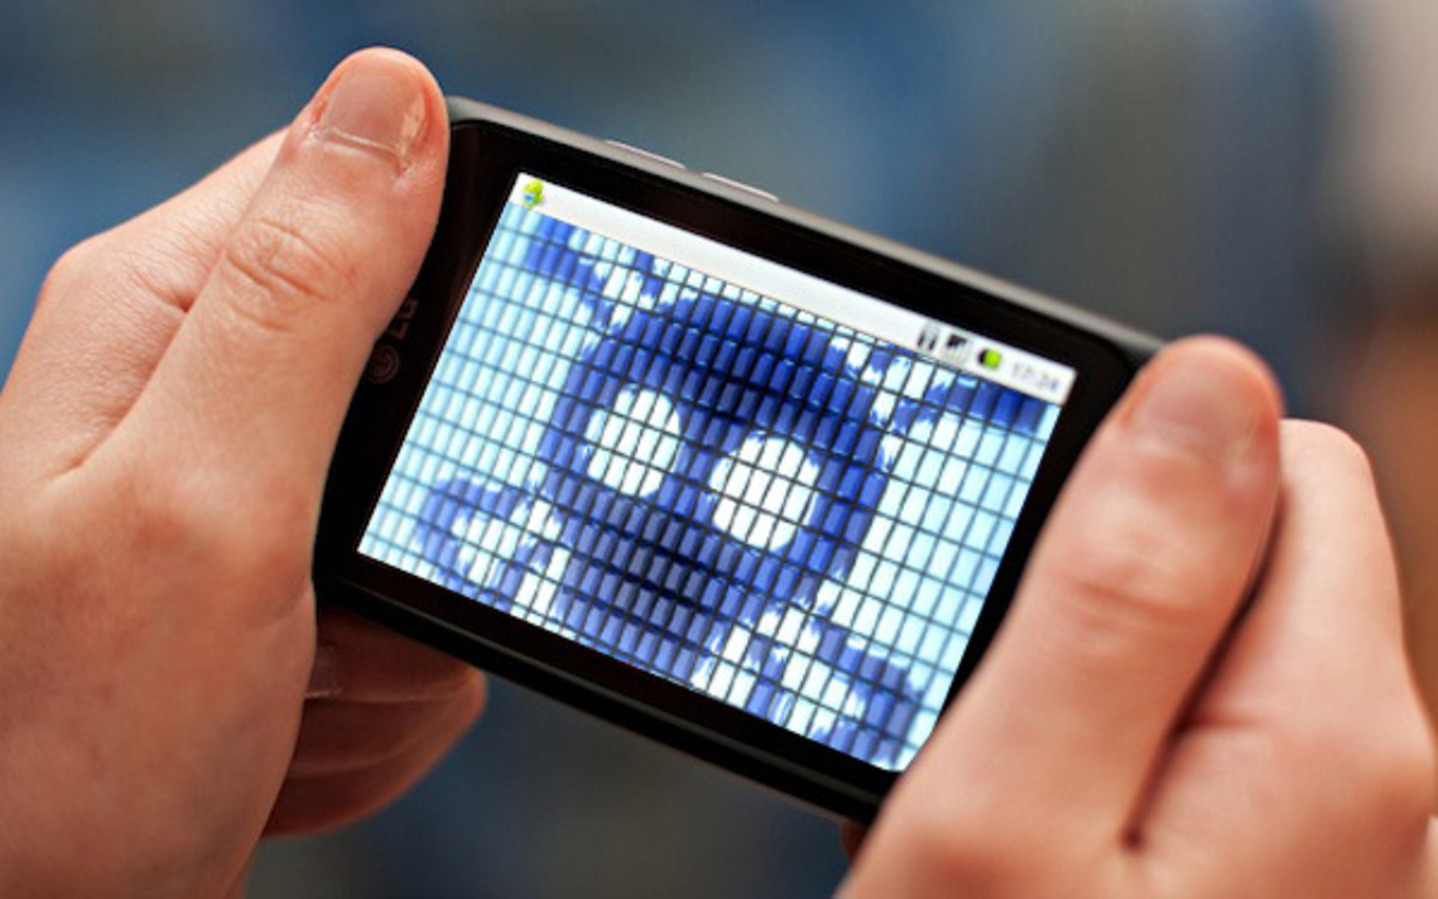 Aplikasi Android Teka-teki Dengan Malware Yang Diunduh Lebih dari 100 Juta Kali